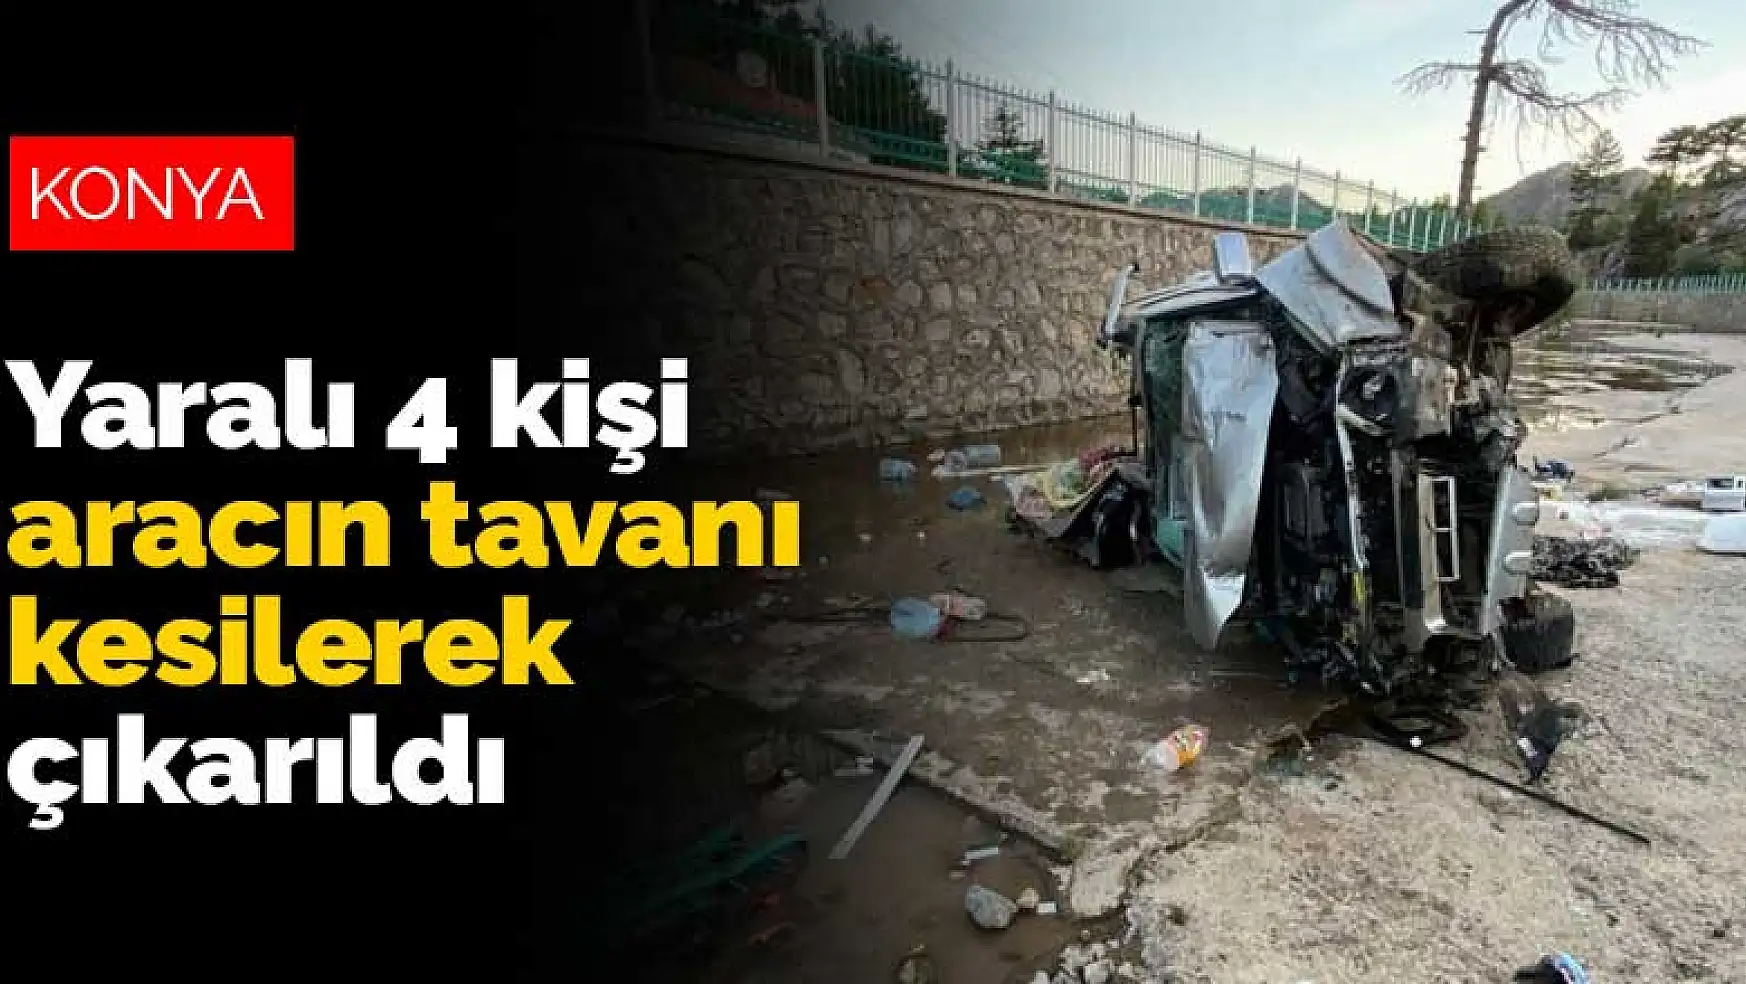 Konya'da kanala uçan kamyonetteki 4 kişi aracın tavanı kesilerek çıkarıldı